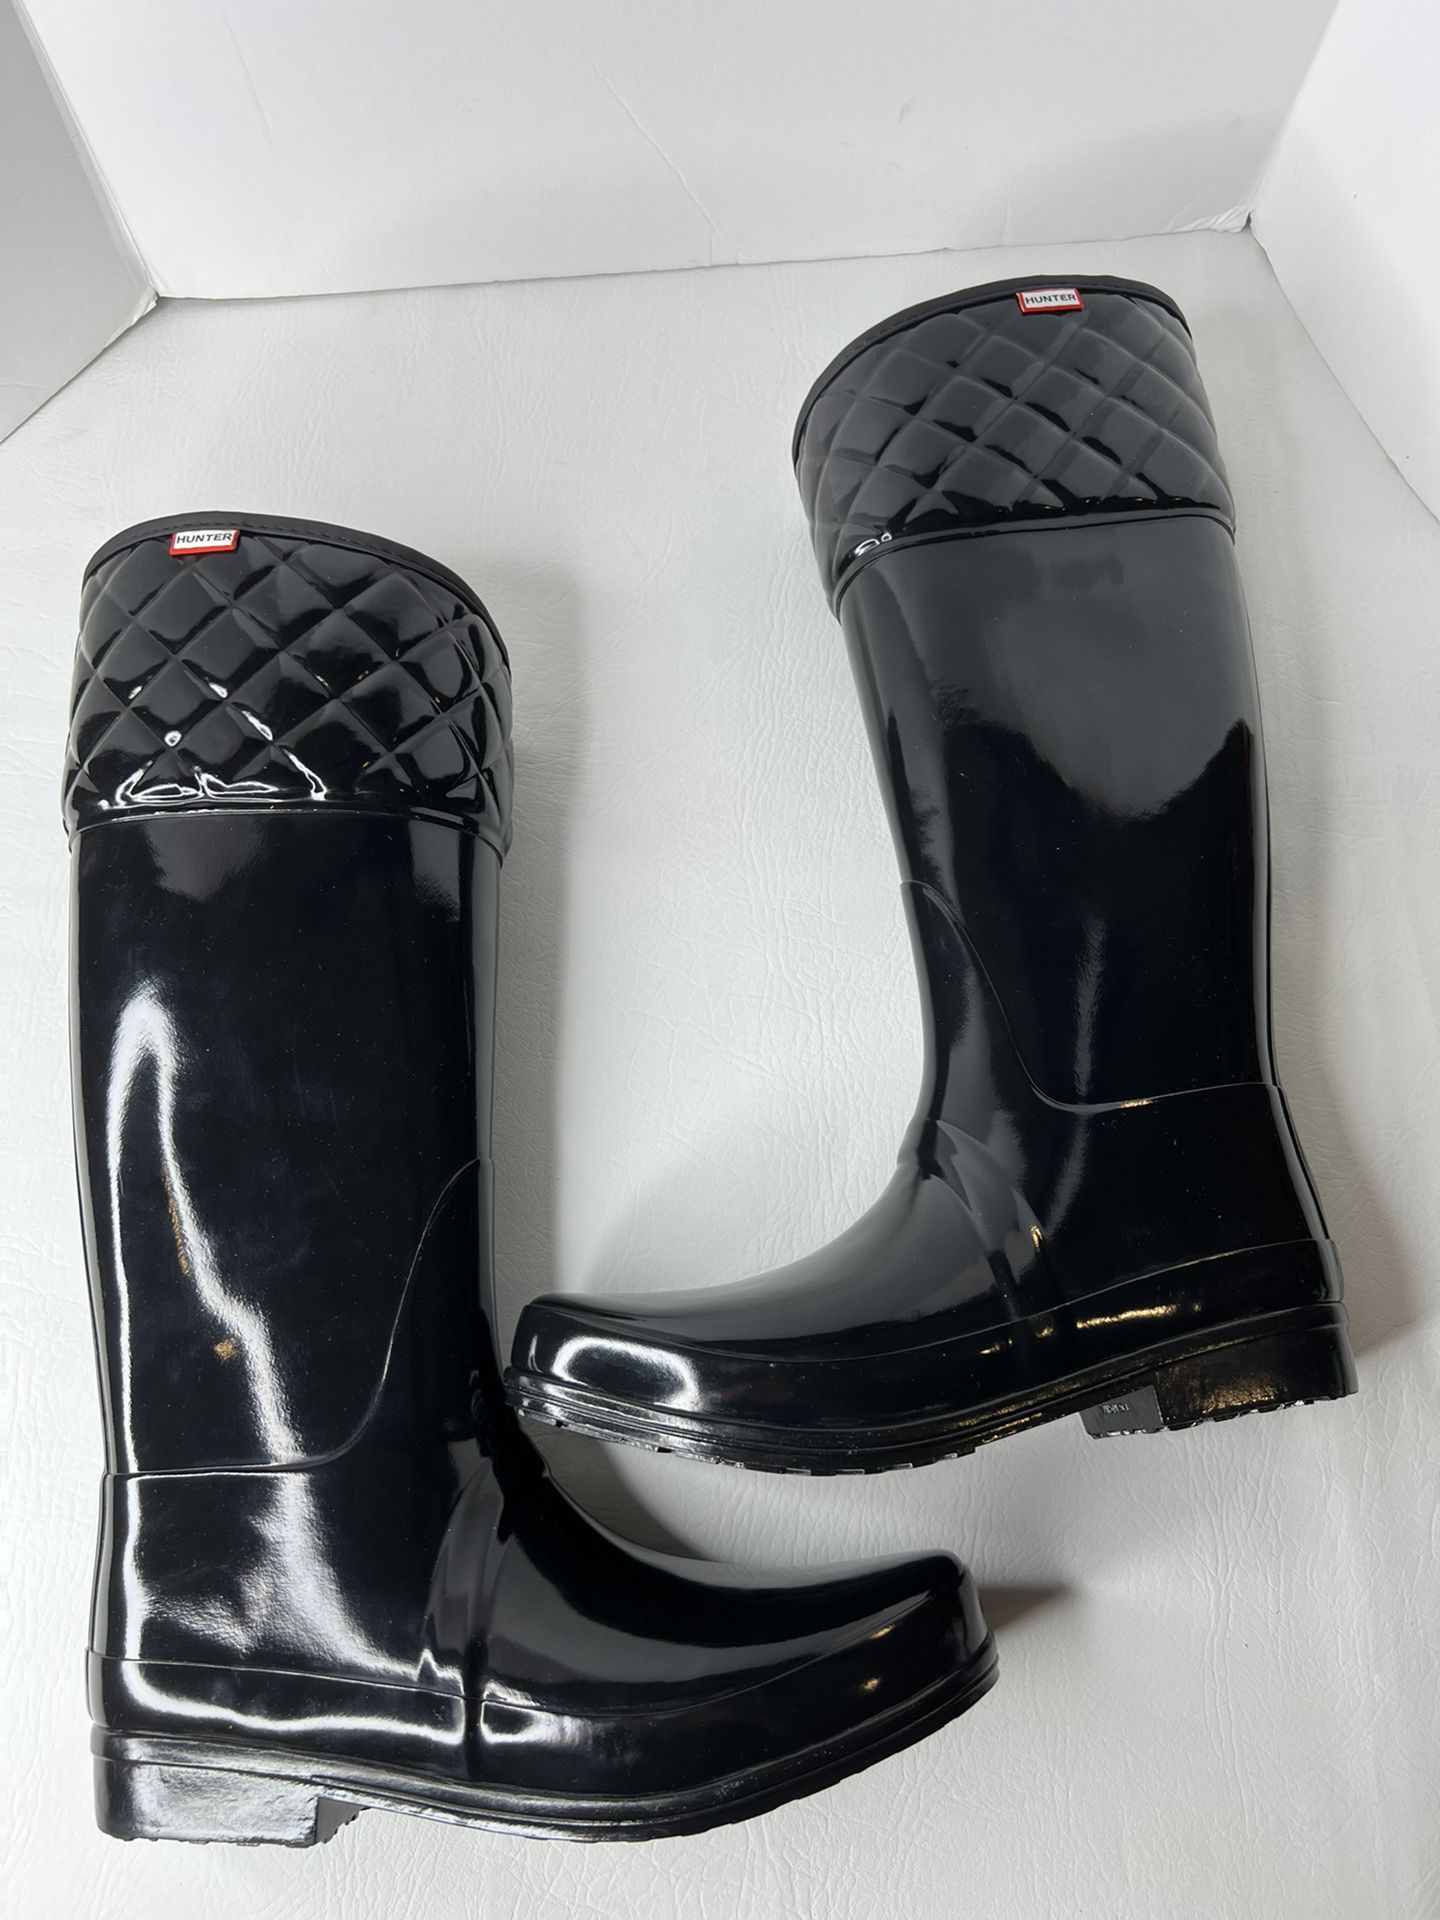 NEW in box HUNTER black rubber rain boots size 11